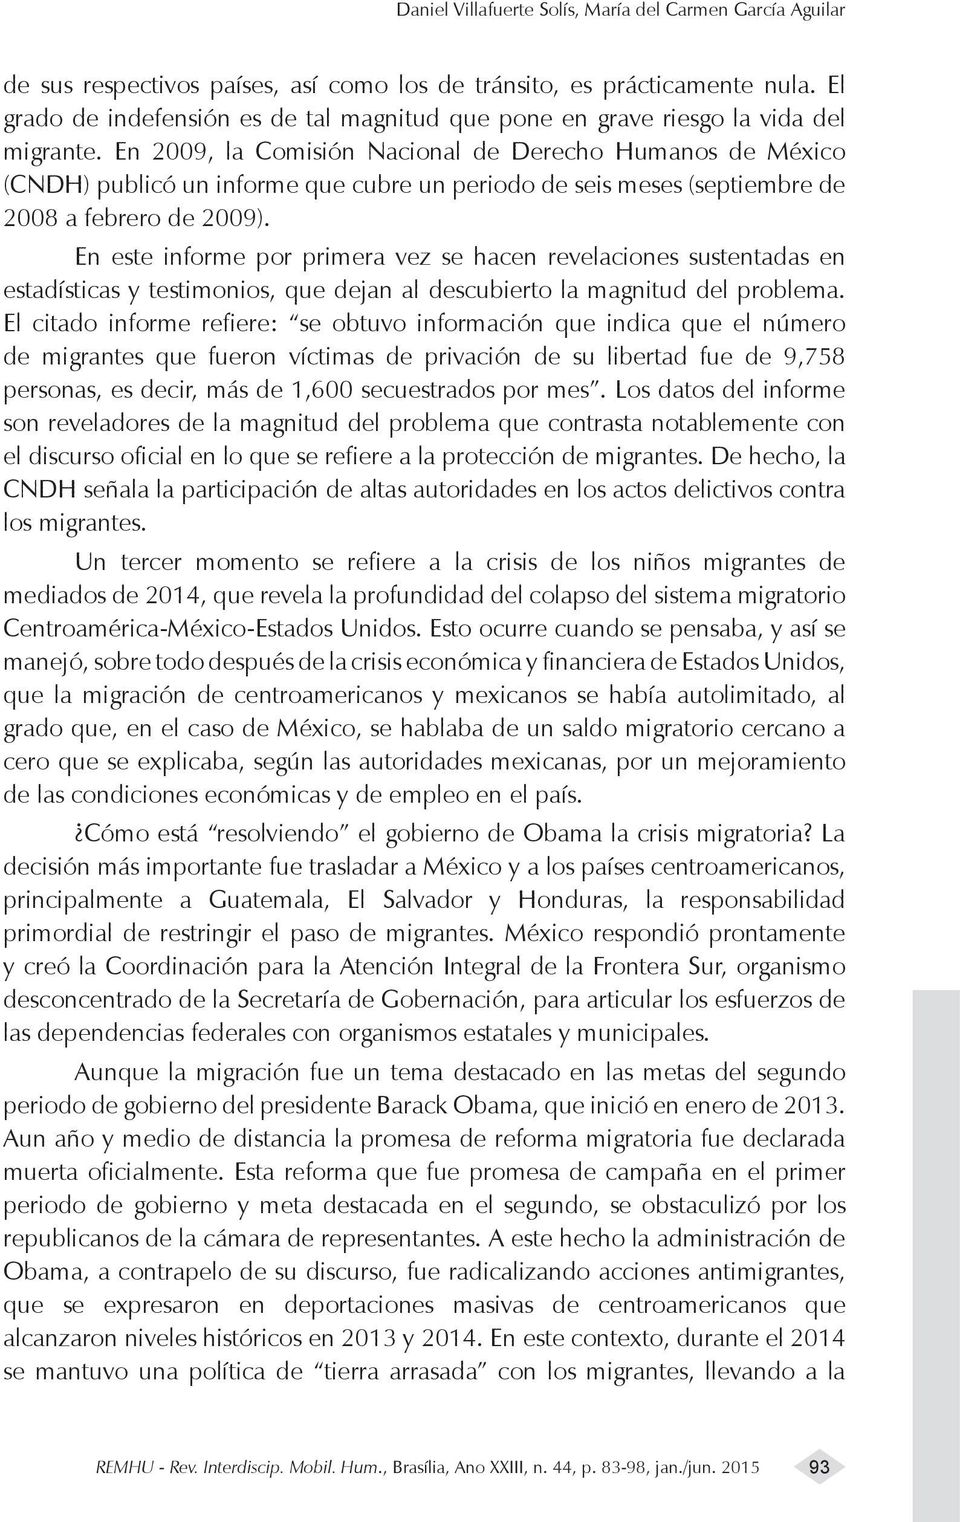 En 2009, la Comisión Nacional de Derecho Humanos de México (CNDH) publicó un informe que cubre un periodo de seis meses (septiembre de 2008 a febrero de 2009).